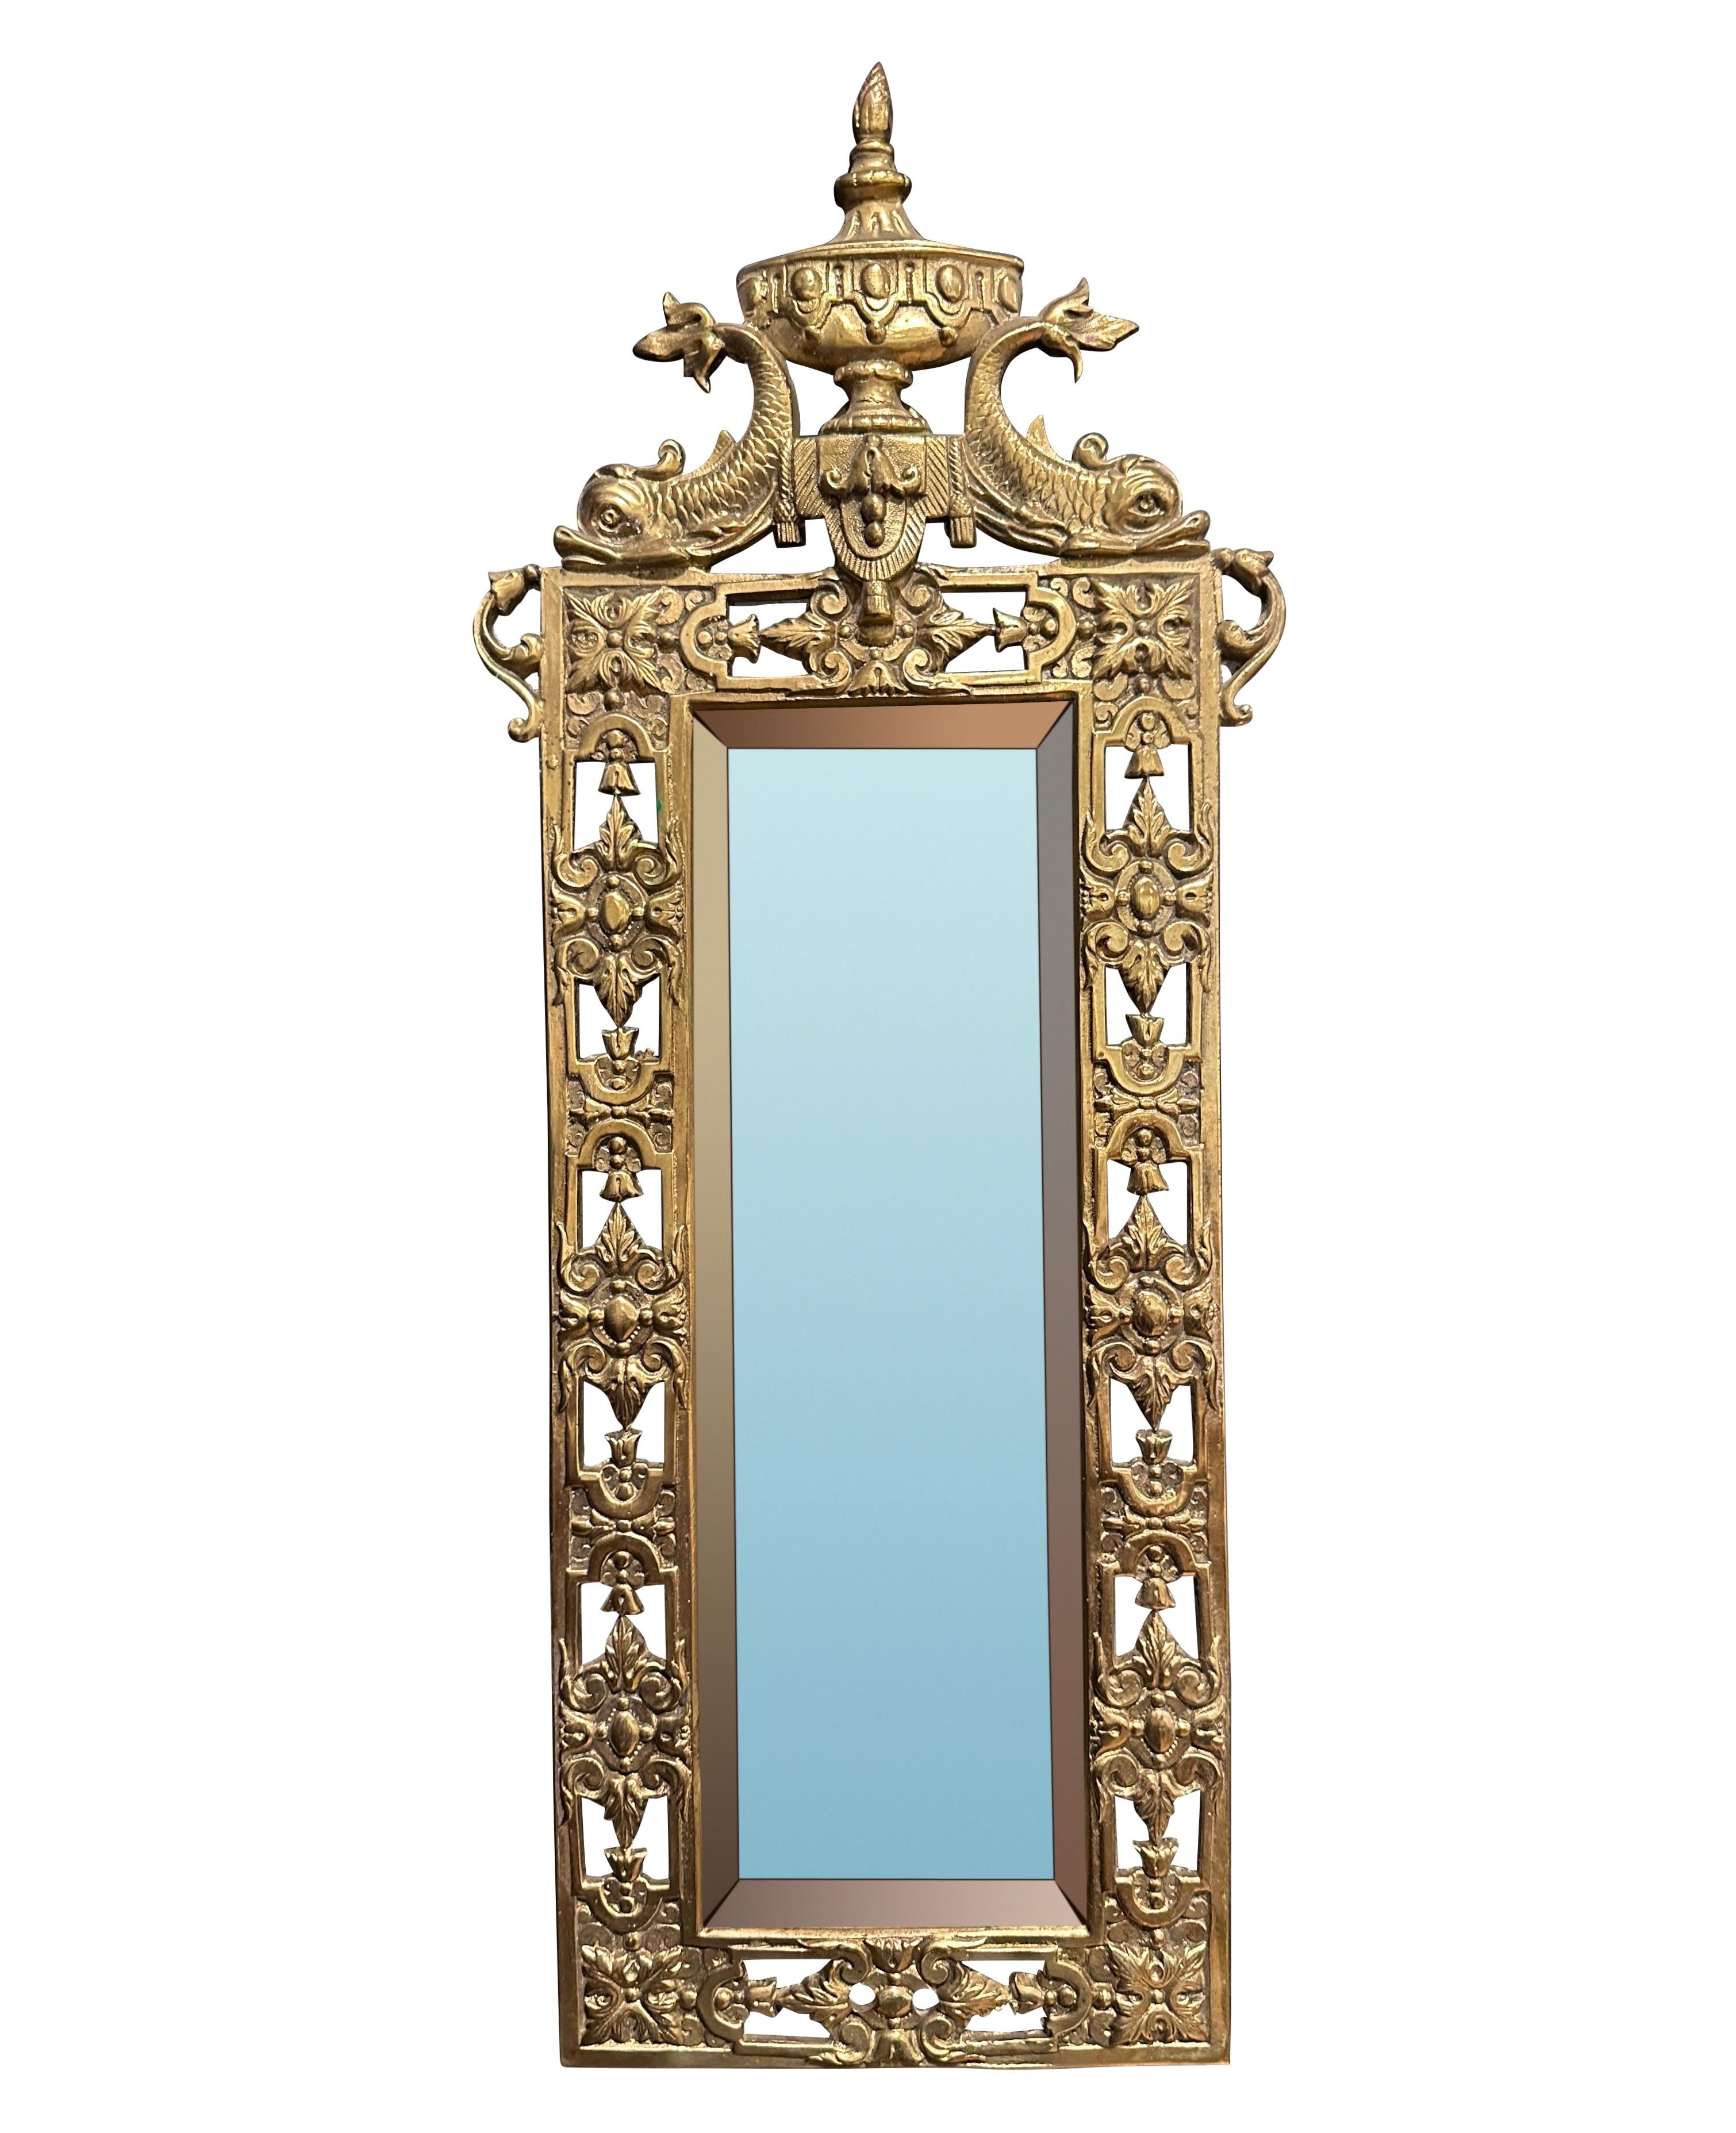 Paire de petits miroirs en bronze doré du XIXe siècle. De style Louis XVI, avec un poisson dauphin soutenant une urne centrale avec une flamme. Orné d'une bordure de rosettes carrées, de décorations en forme d'œuf et de fléchettes. Miroirs biseautés